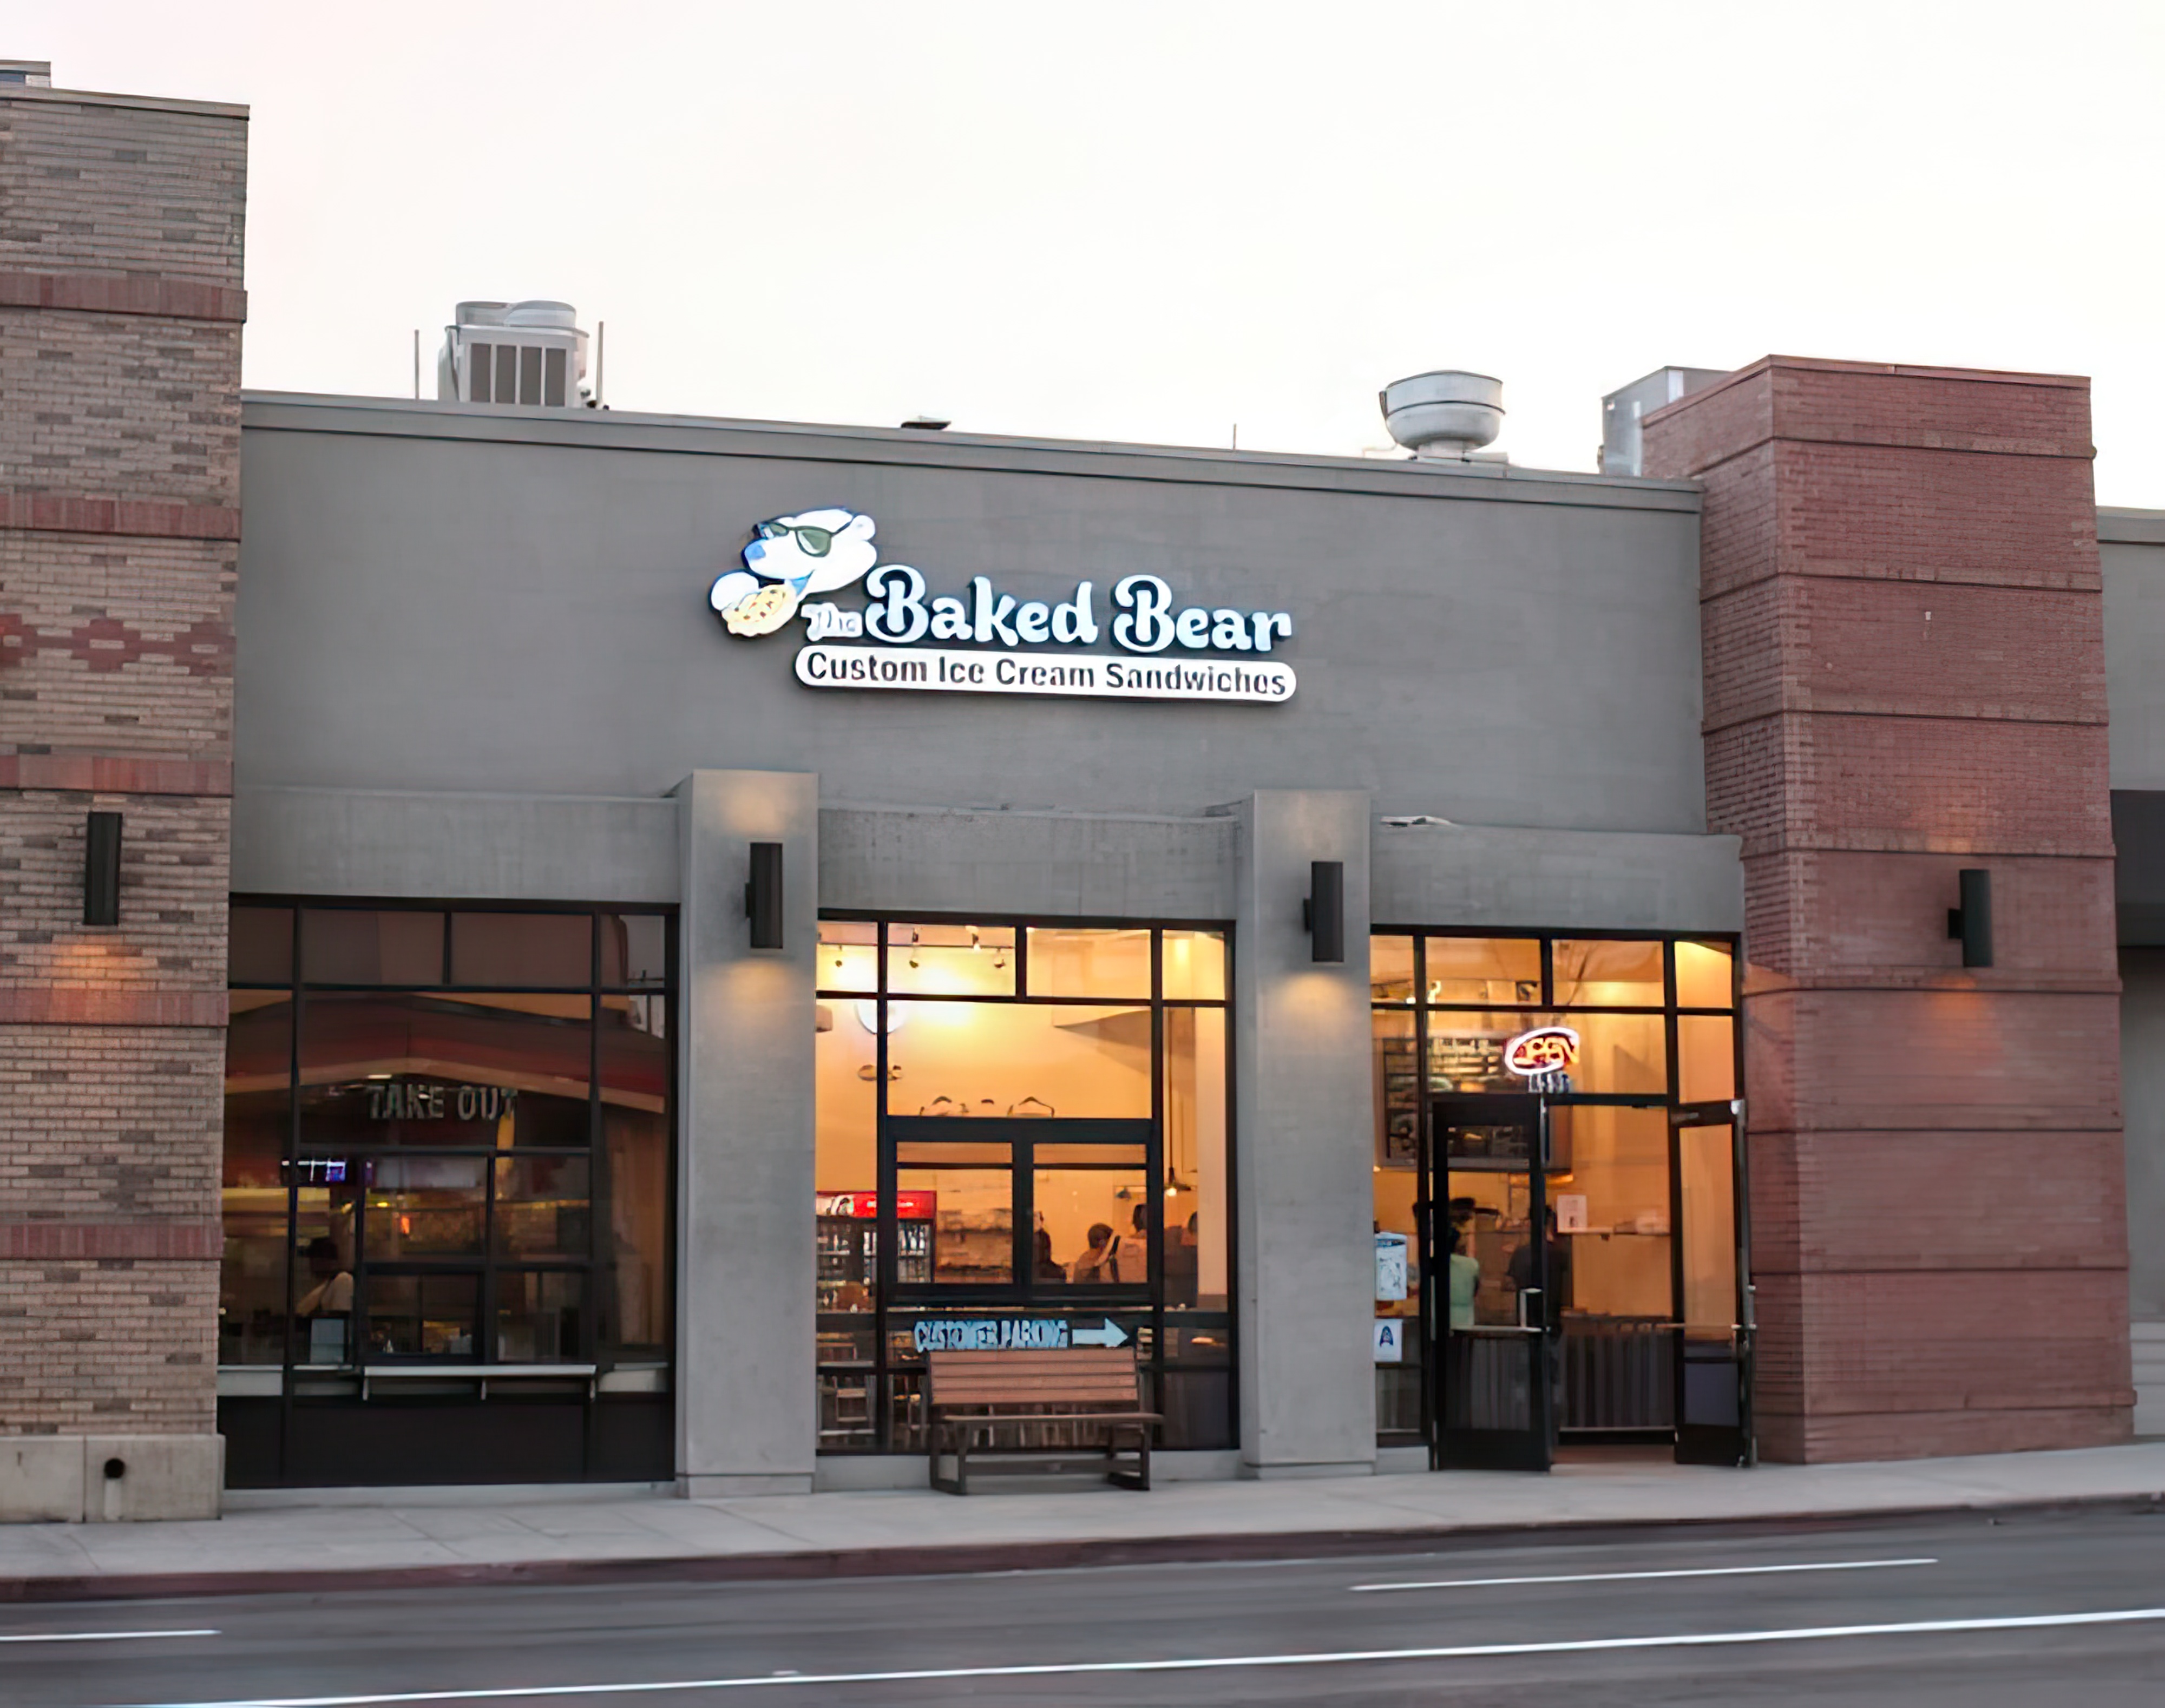 The Baked Bear San Diego exterior